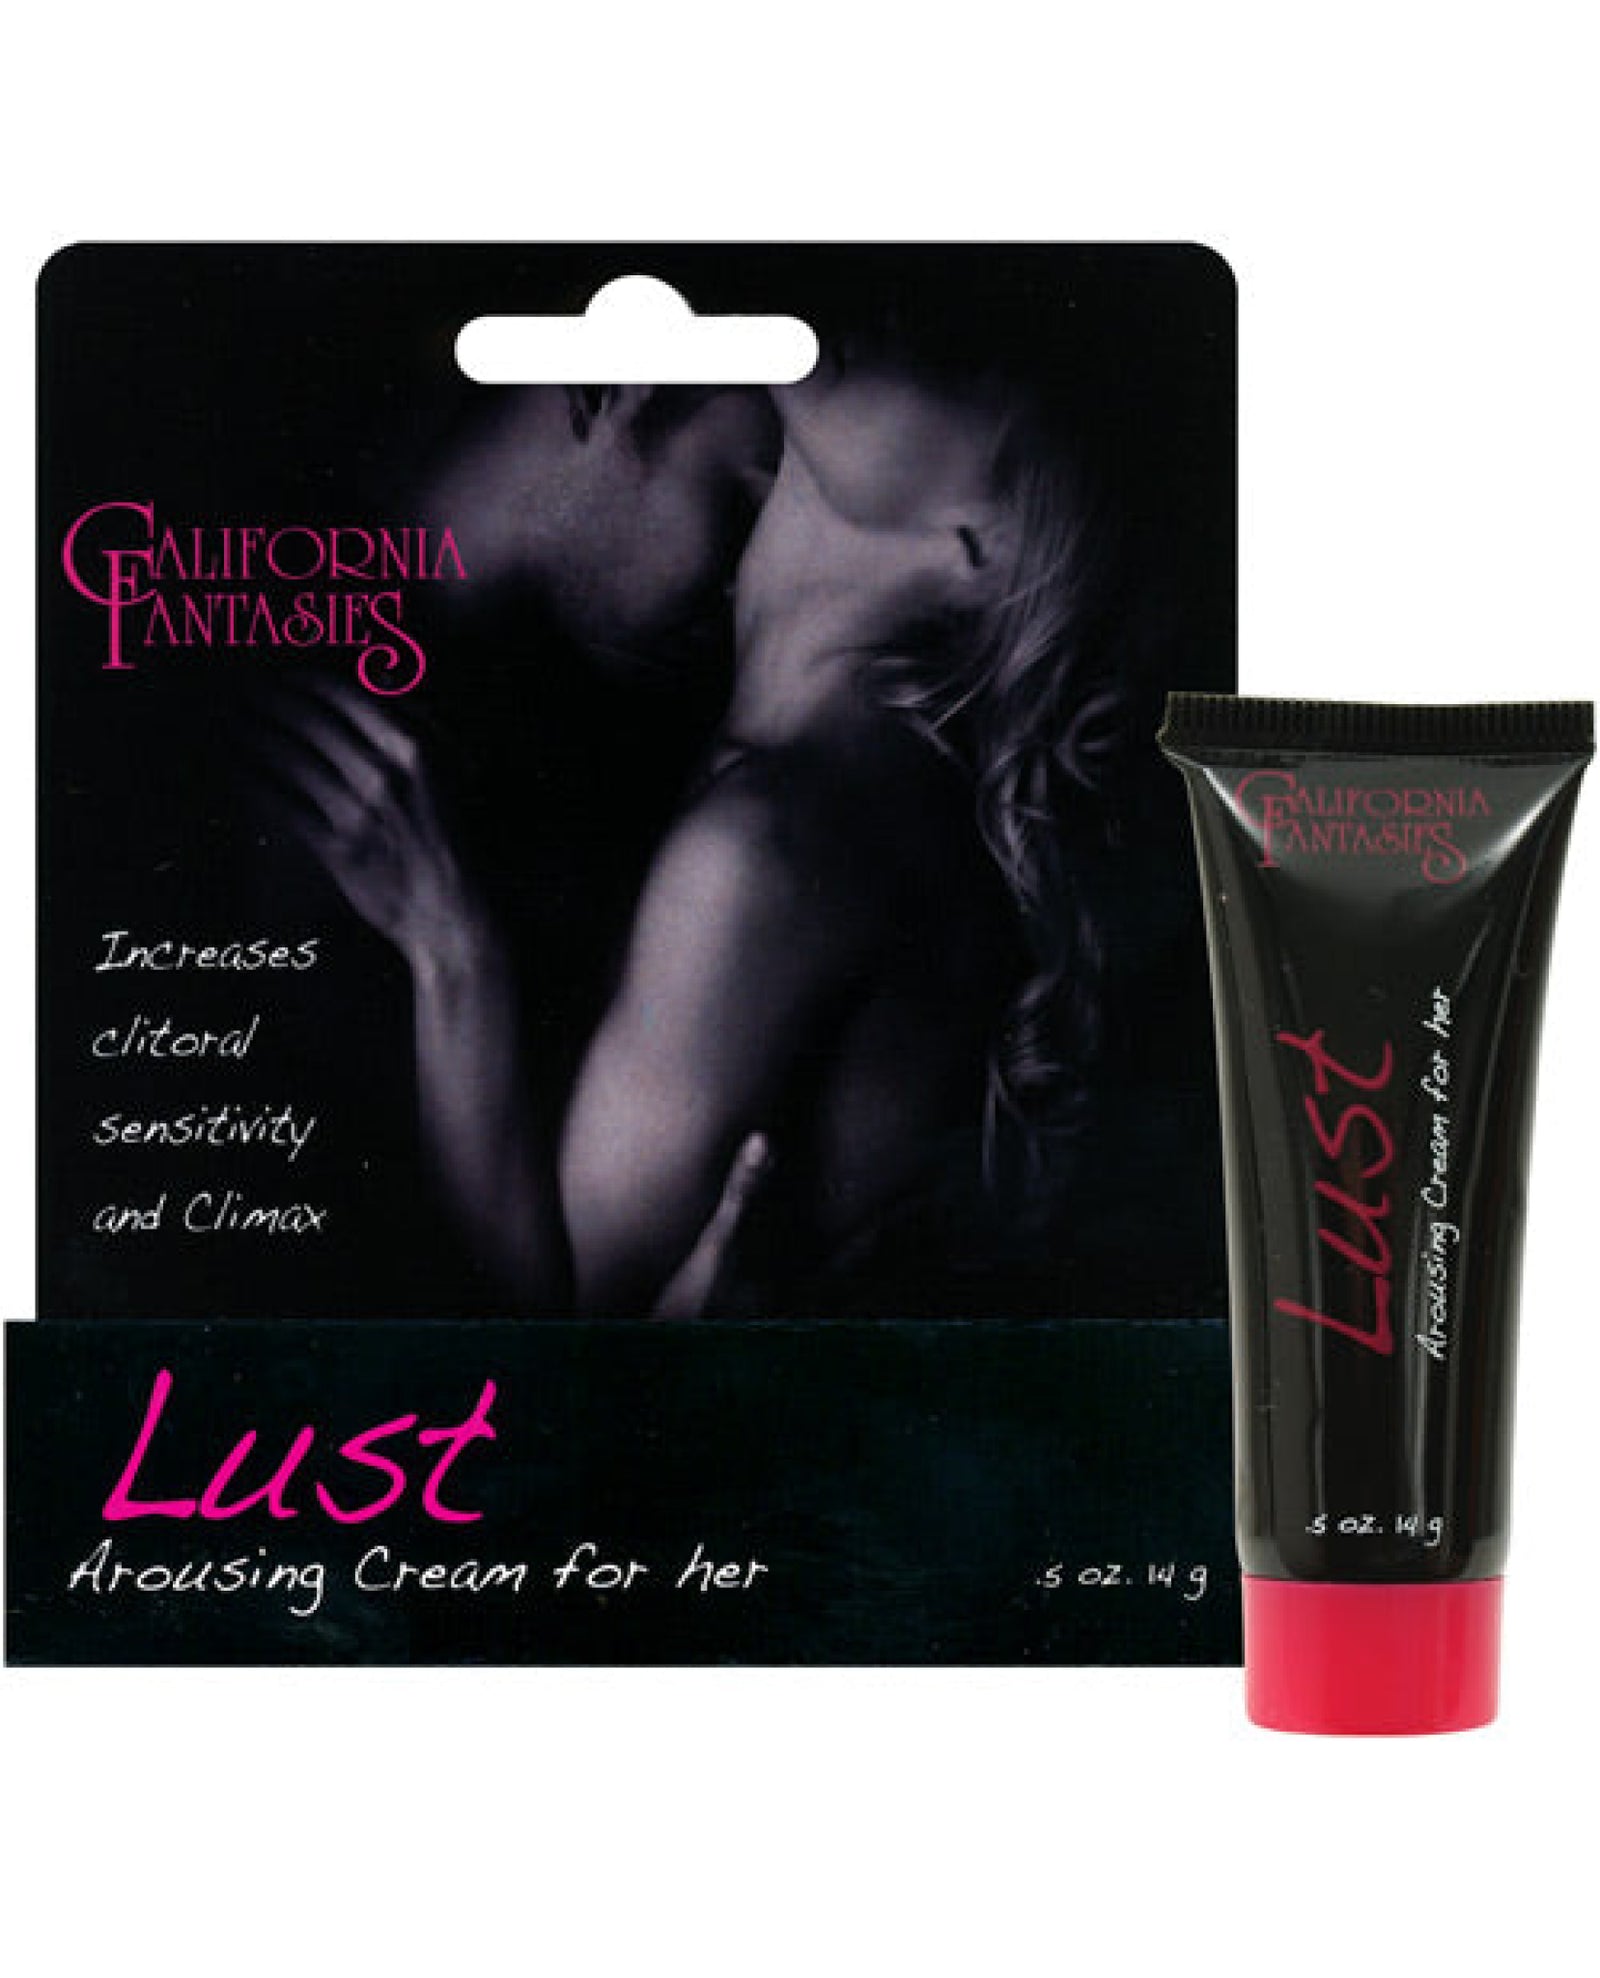 Lust Arousing Cream For Her - .5 Oz Tube California Fantasies